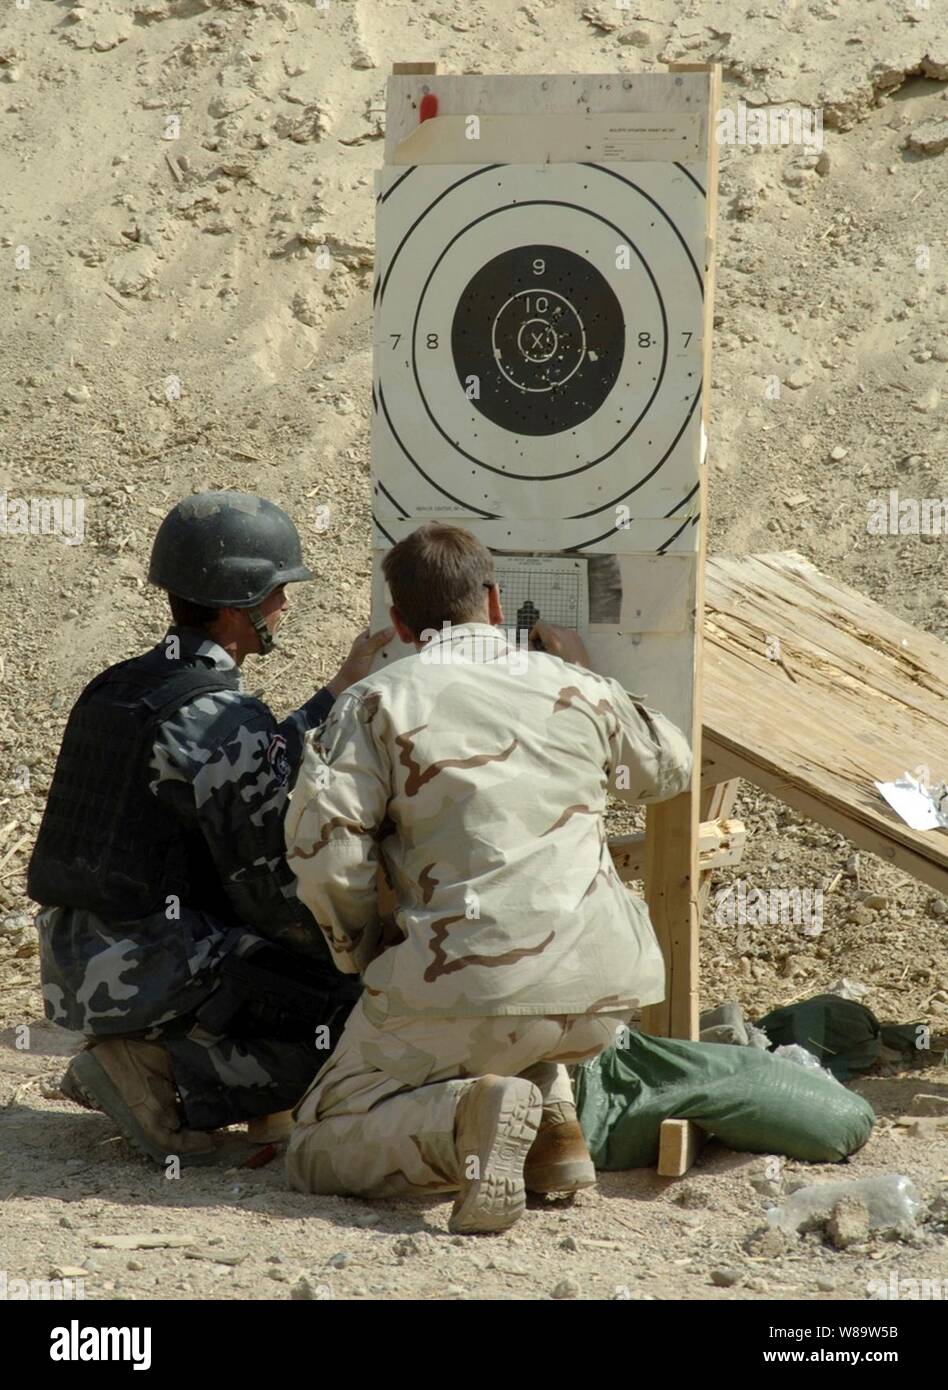 Un soldat de l'armée américaine (à droite), du 3e Bataillon, 10e Groupe des Forces spéciales reviews une cible tout en aidant un irakien d'armes spéciales et tactiques avec des membres de l'équipe observation correctement dans son arme au cours de l'entraînement au Camp touché, l'Iraq, le 26 août 2007. Banque D'Images